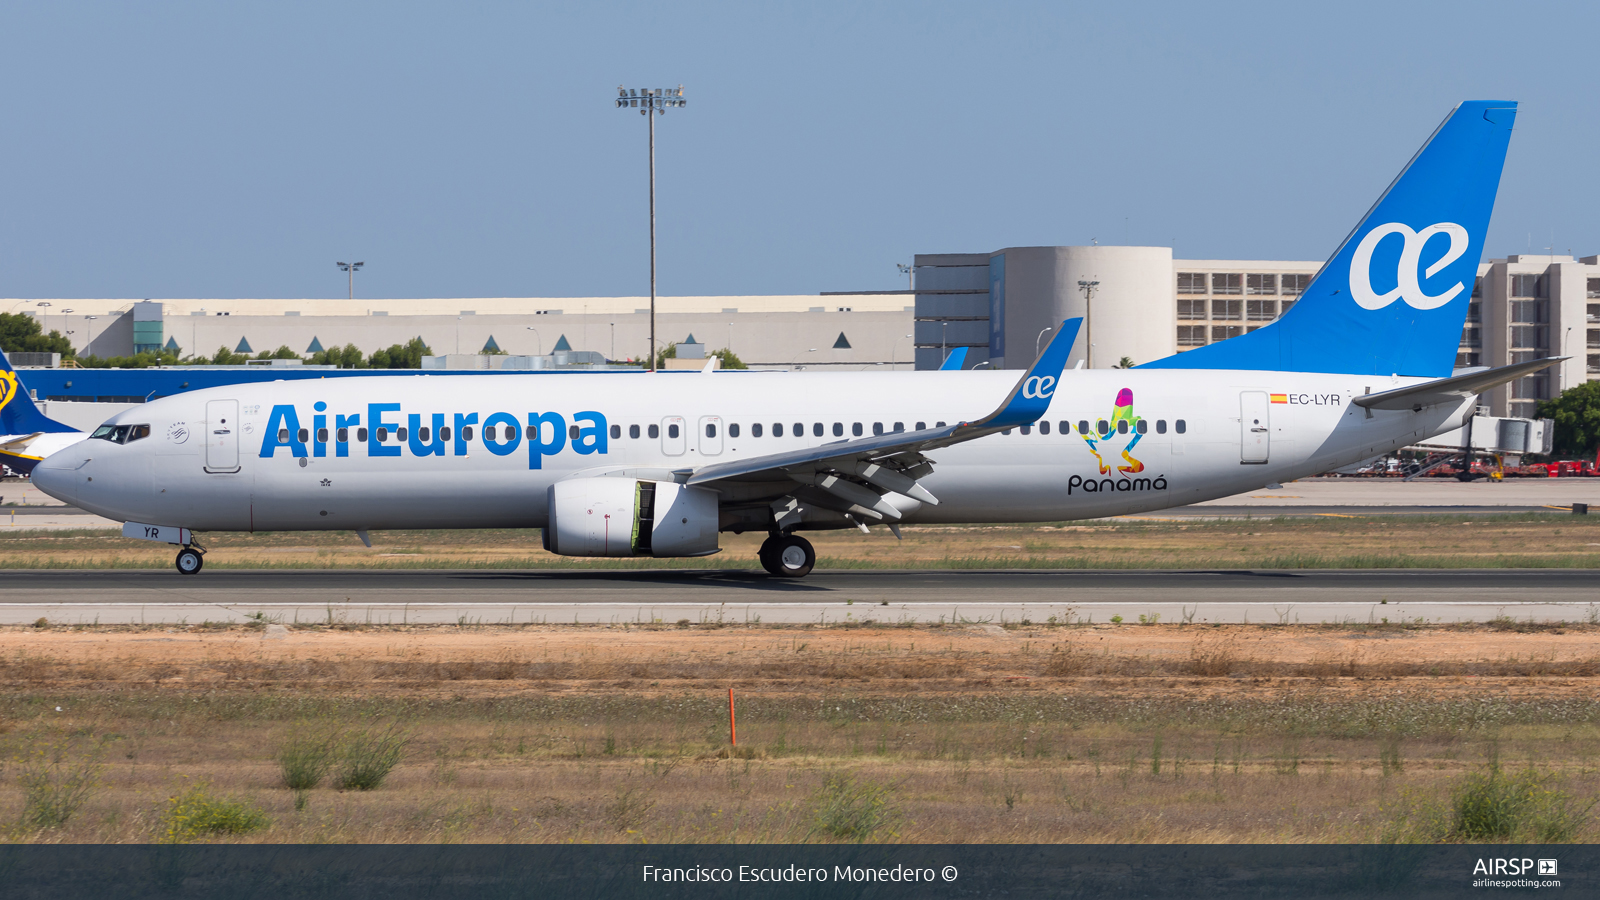 Air Europa  Boeing 737-800  EC-LYR